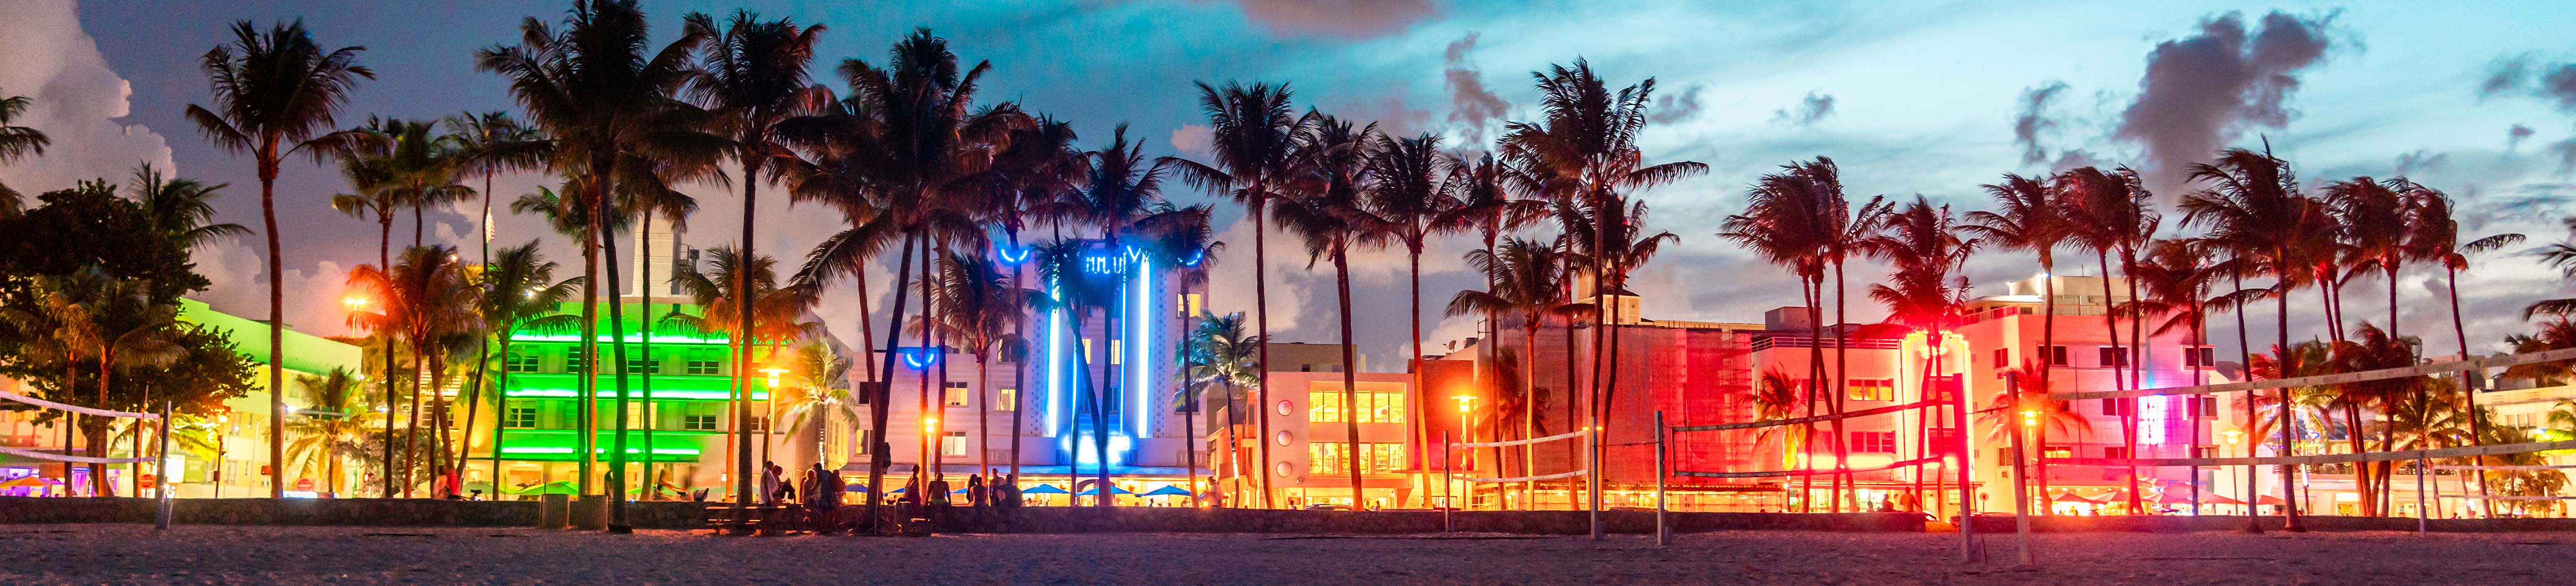 Miami : une des villes les plus cosmopolites des Etats-Unis